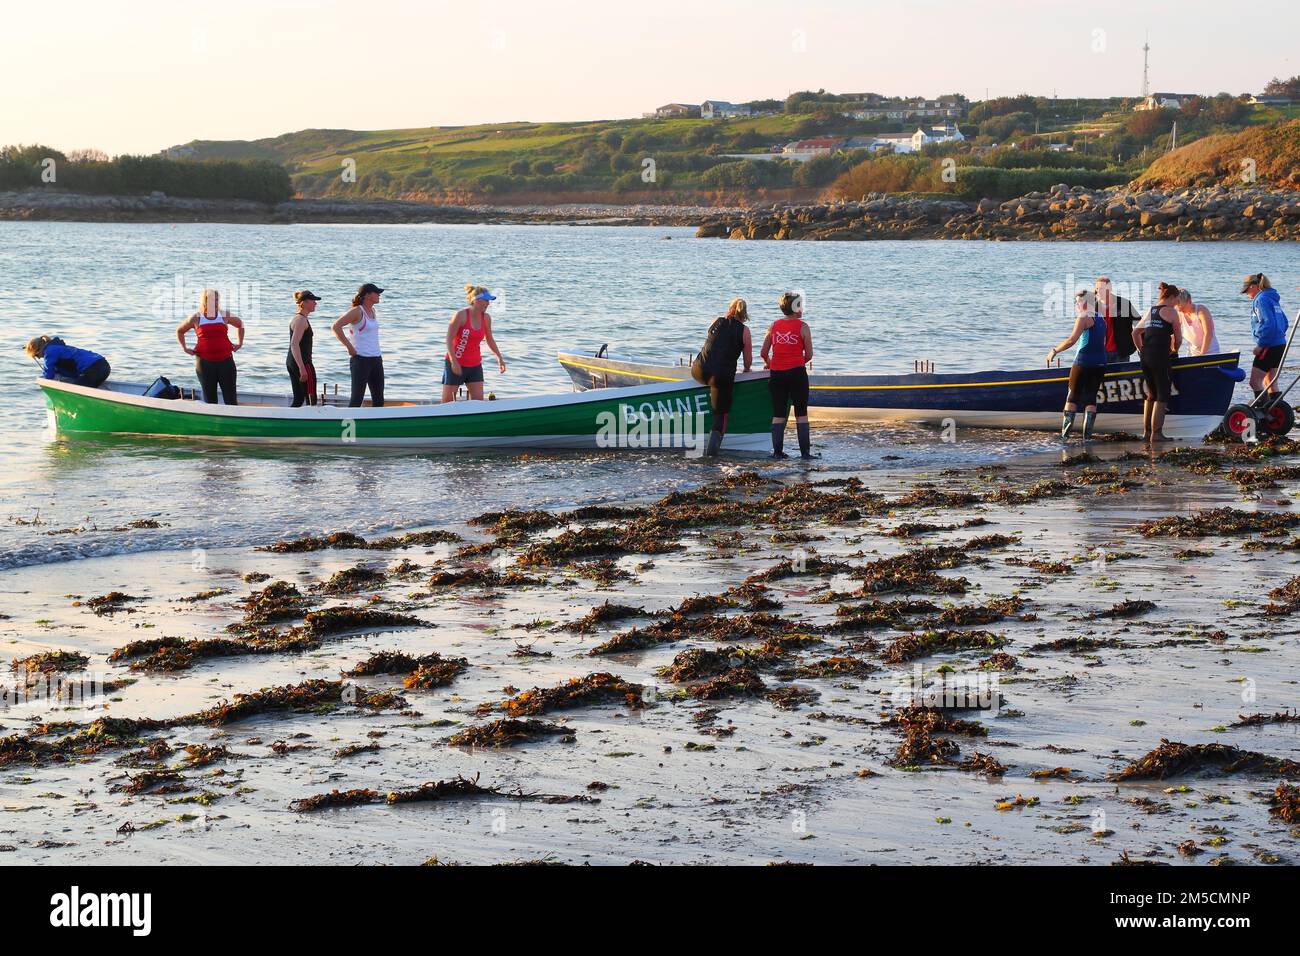 Nach dem Frauenrennen werden die Gigs in Porthmellon Beach, St. Mary's, Cornwall, Großbritannien, an Land gebracht Stockfoto